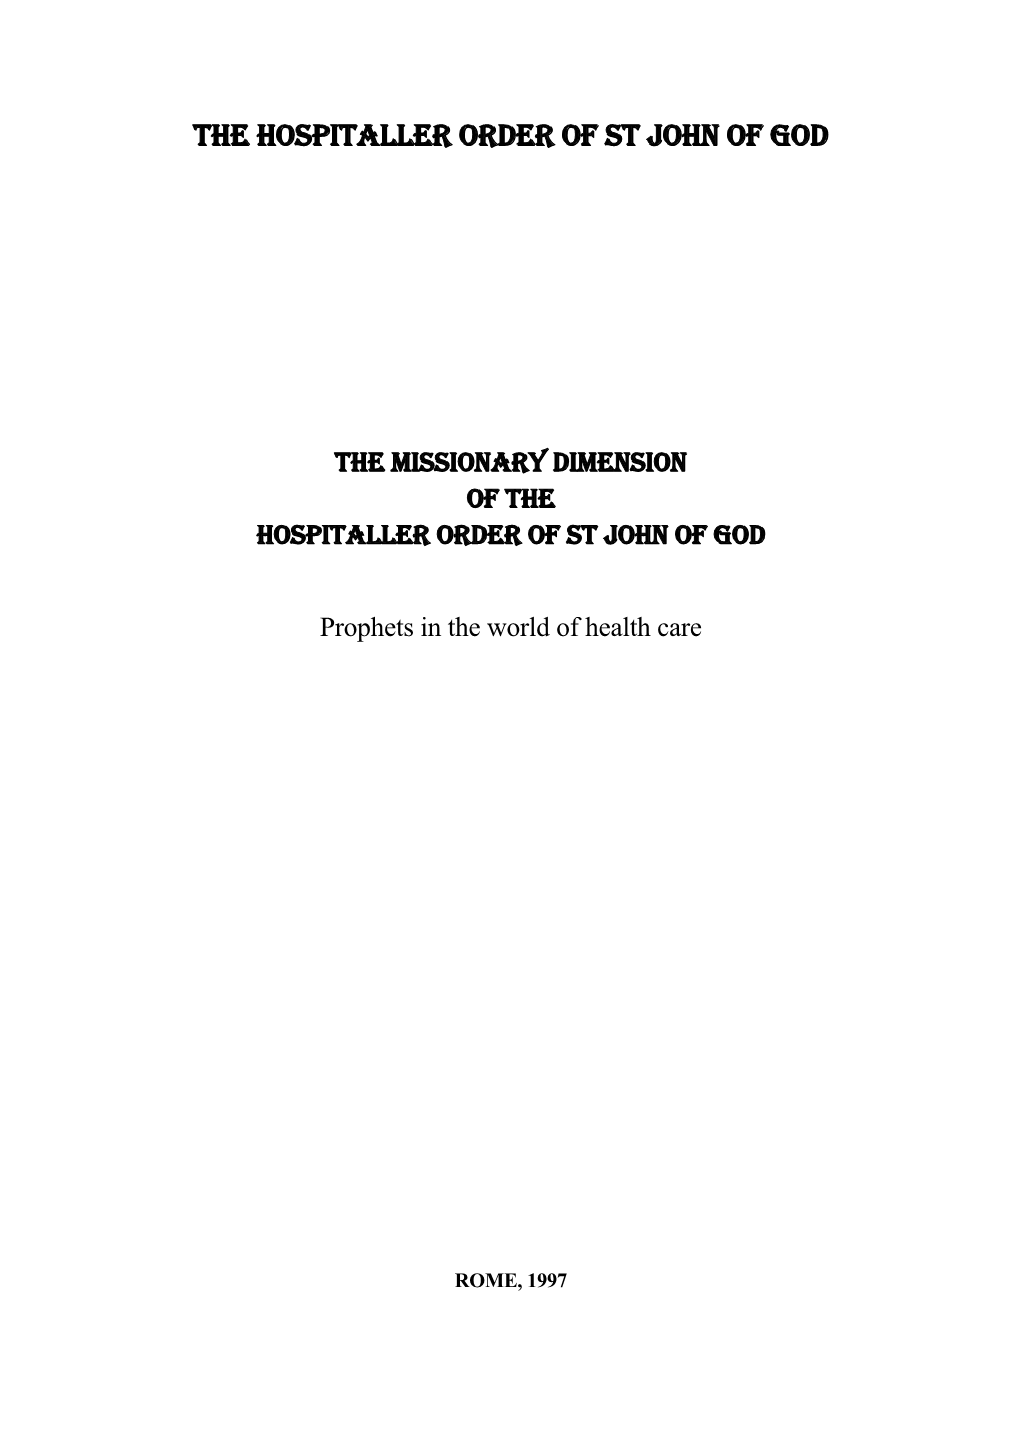 The Hospitaller Order of St John of God